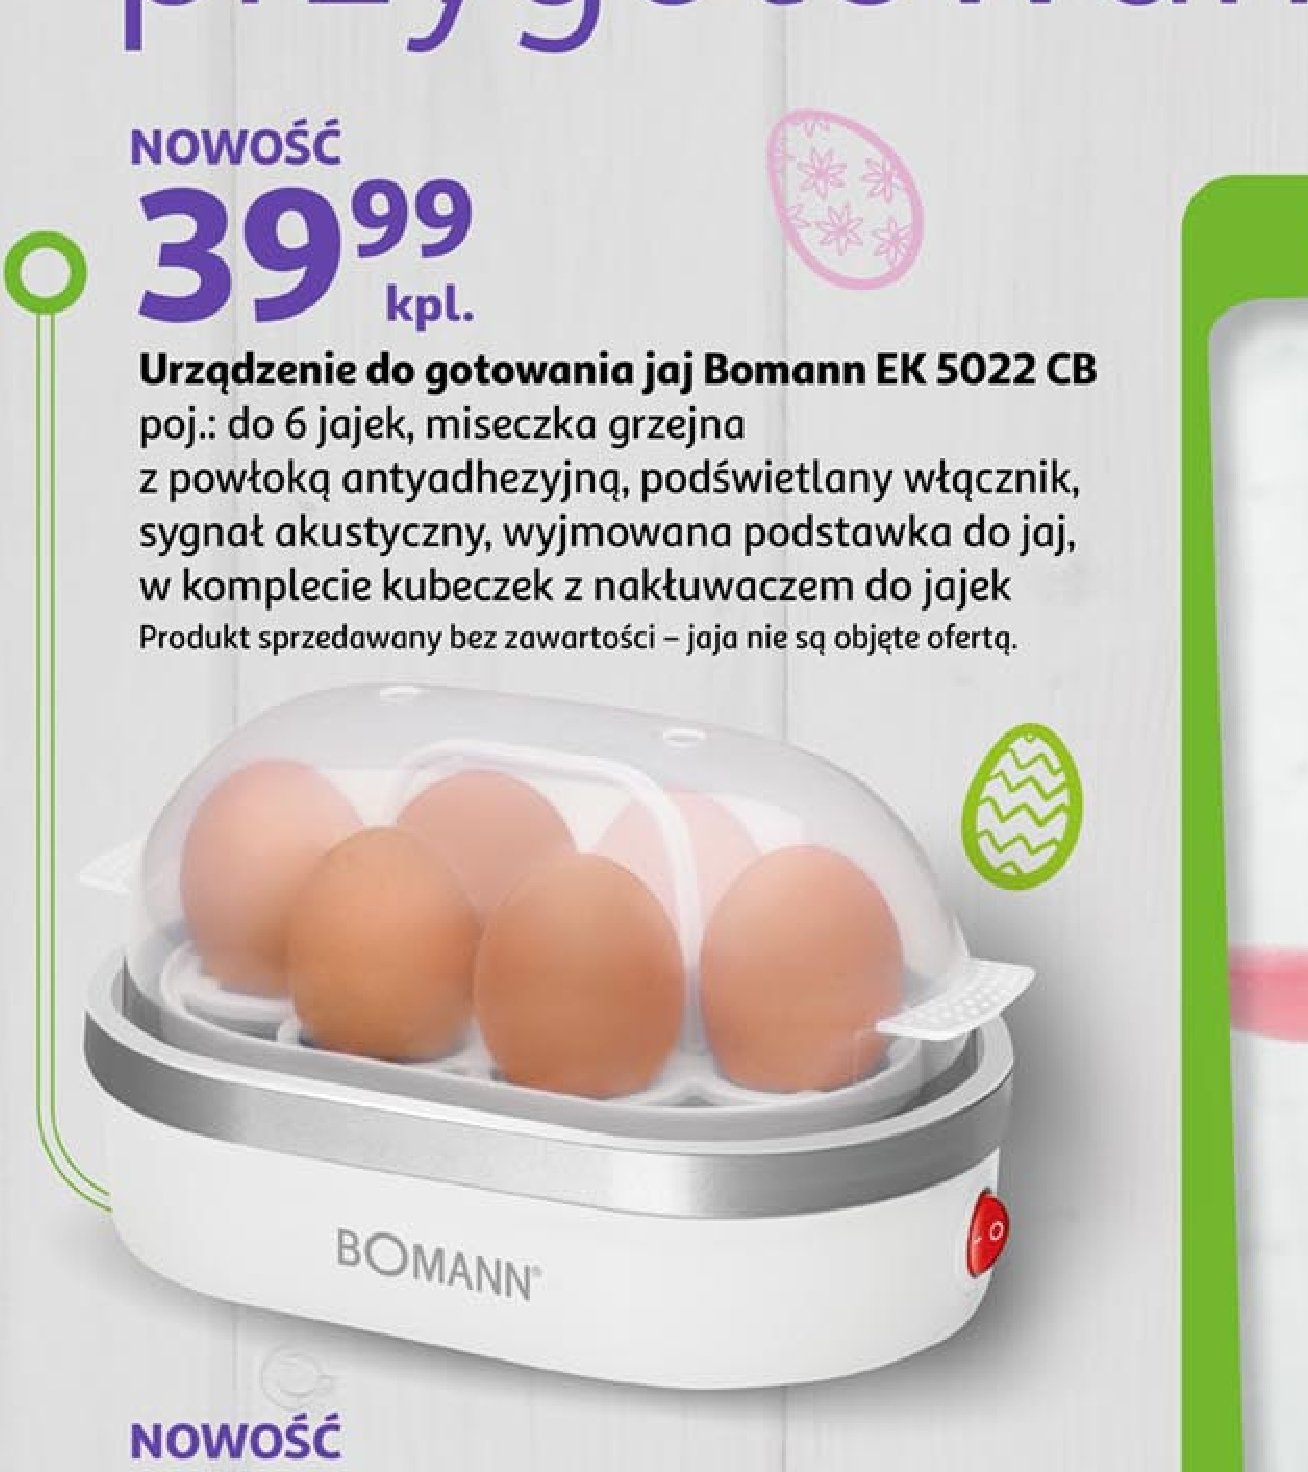 Urządzenie do gotowania jajek ek 5022 Bomann promocja